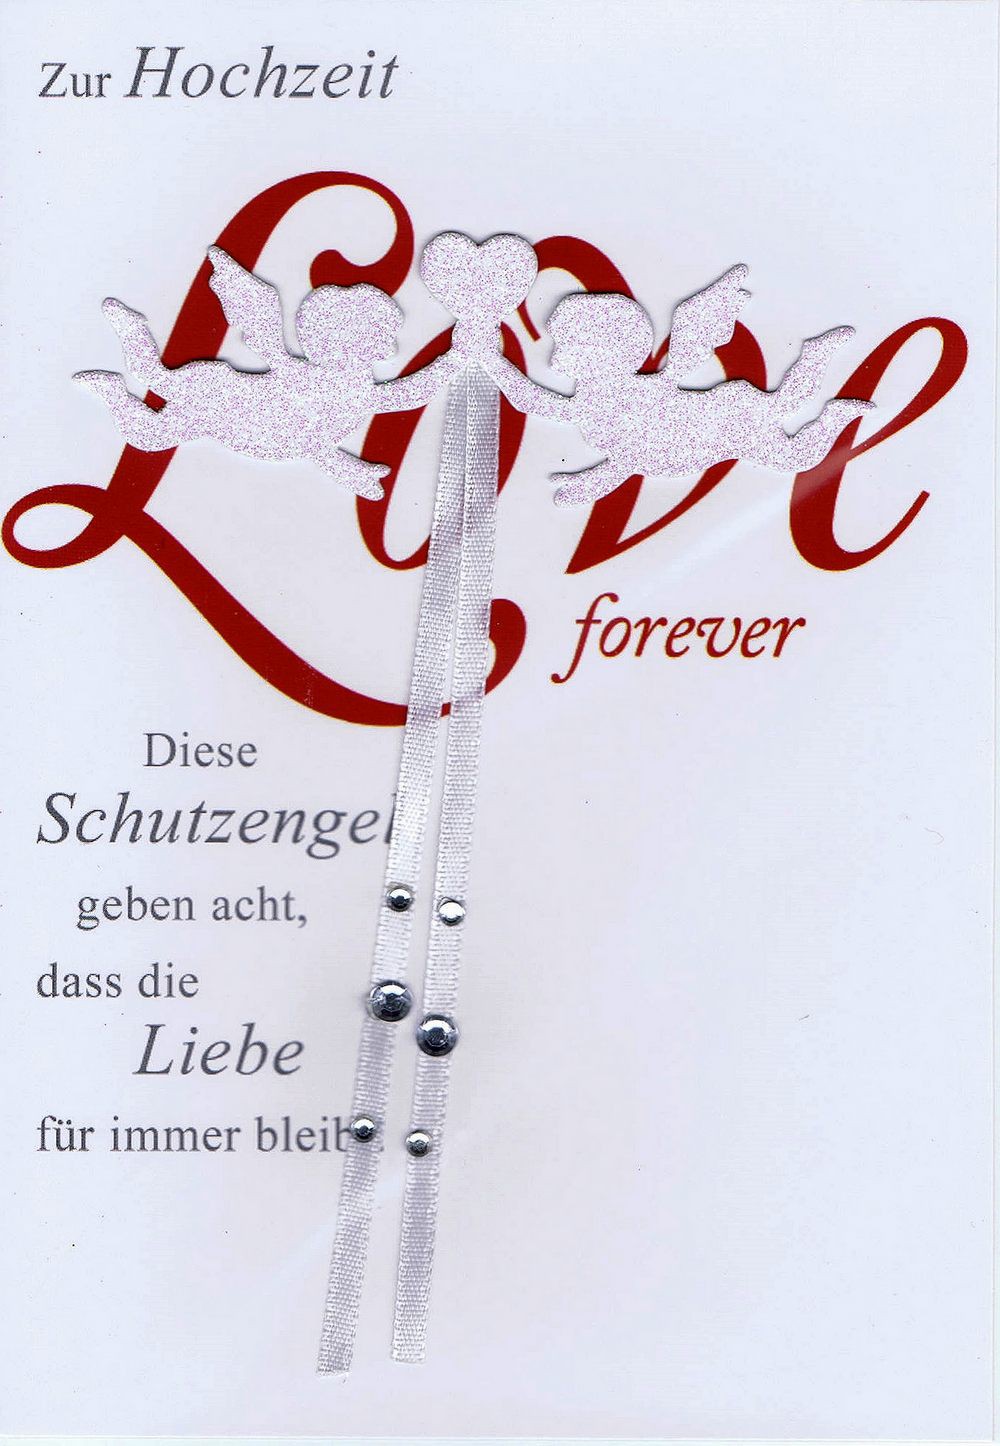 Glückwunschkarte zur Hochzeit - Love forever - Schutzengel